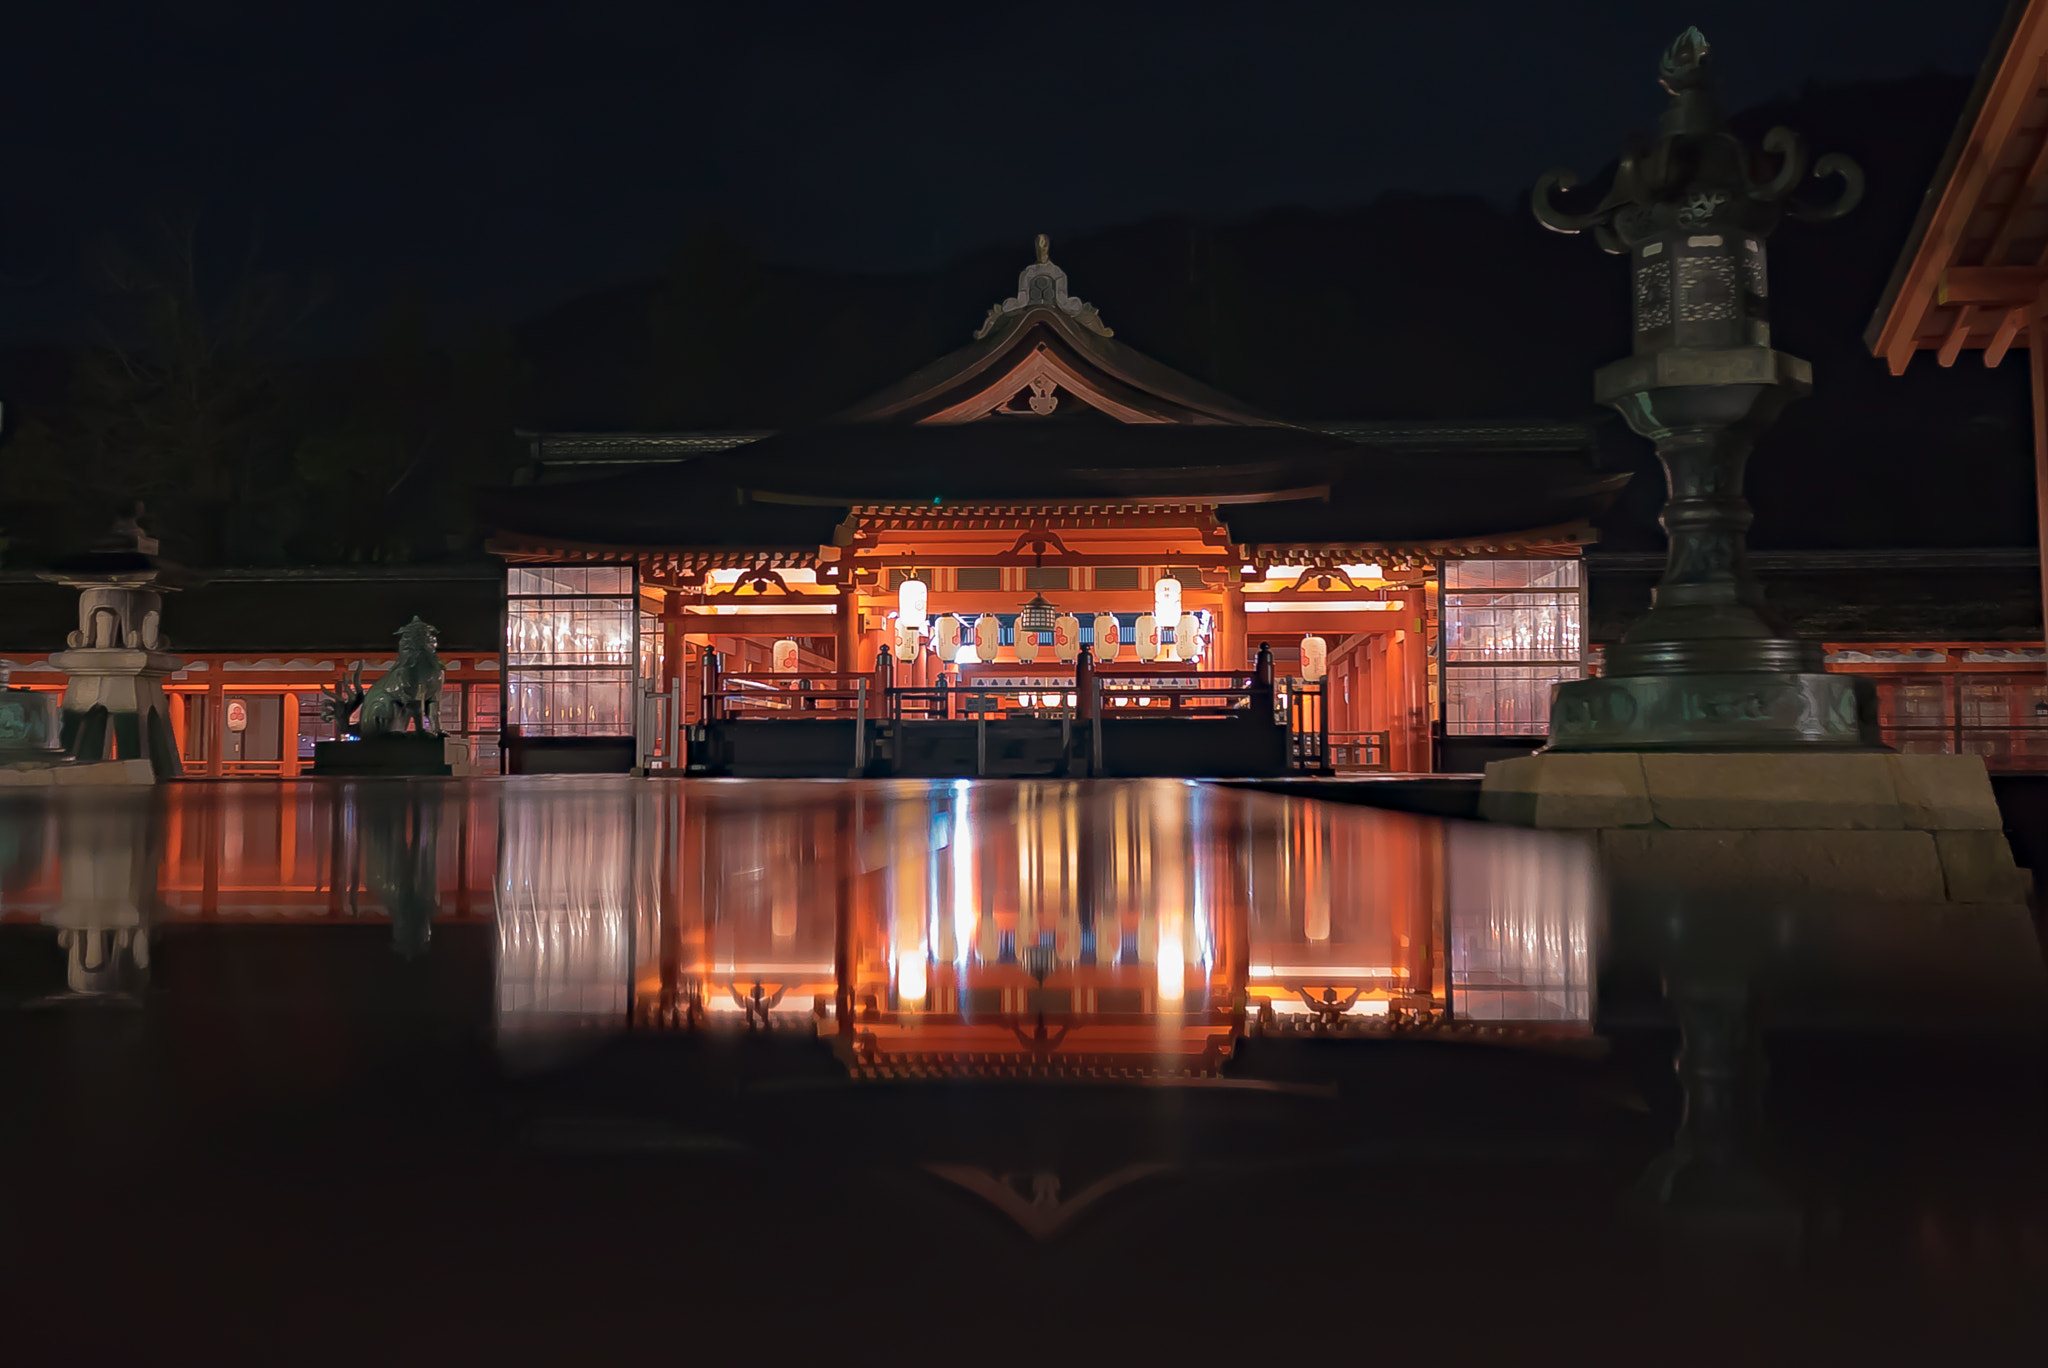 Sony a7S sample photo. Itsukushima shrine at midnight photography